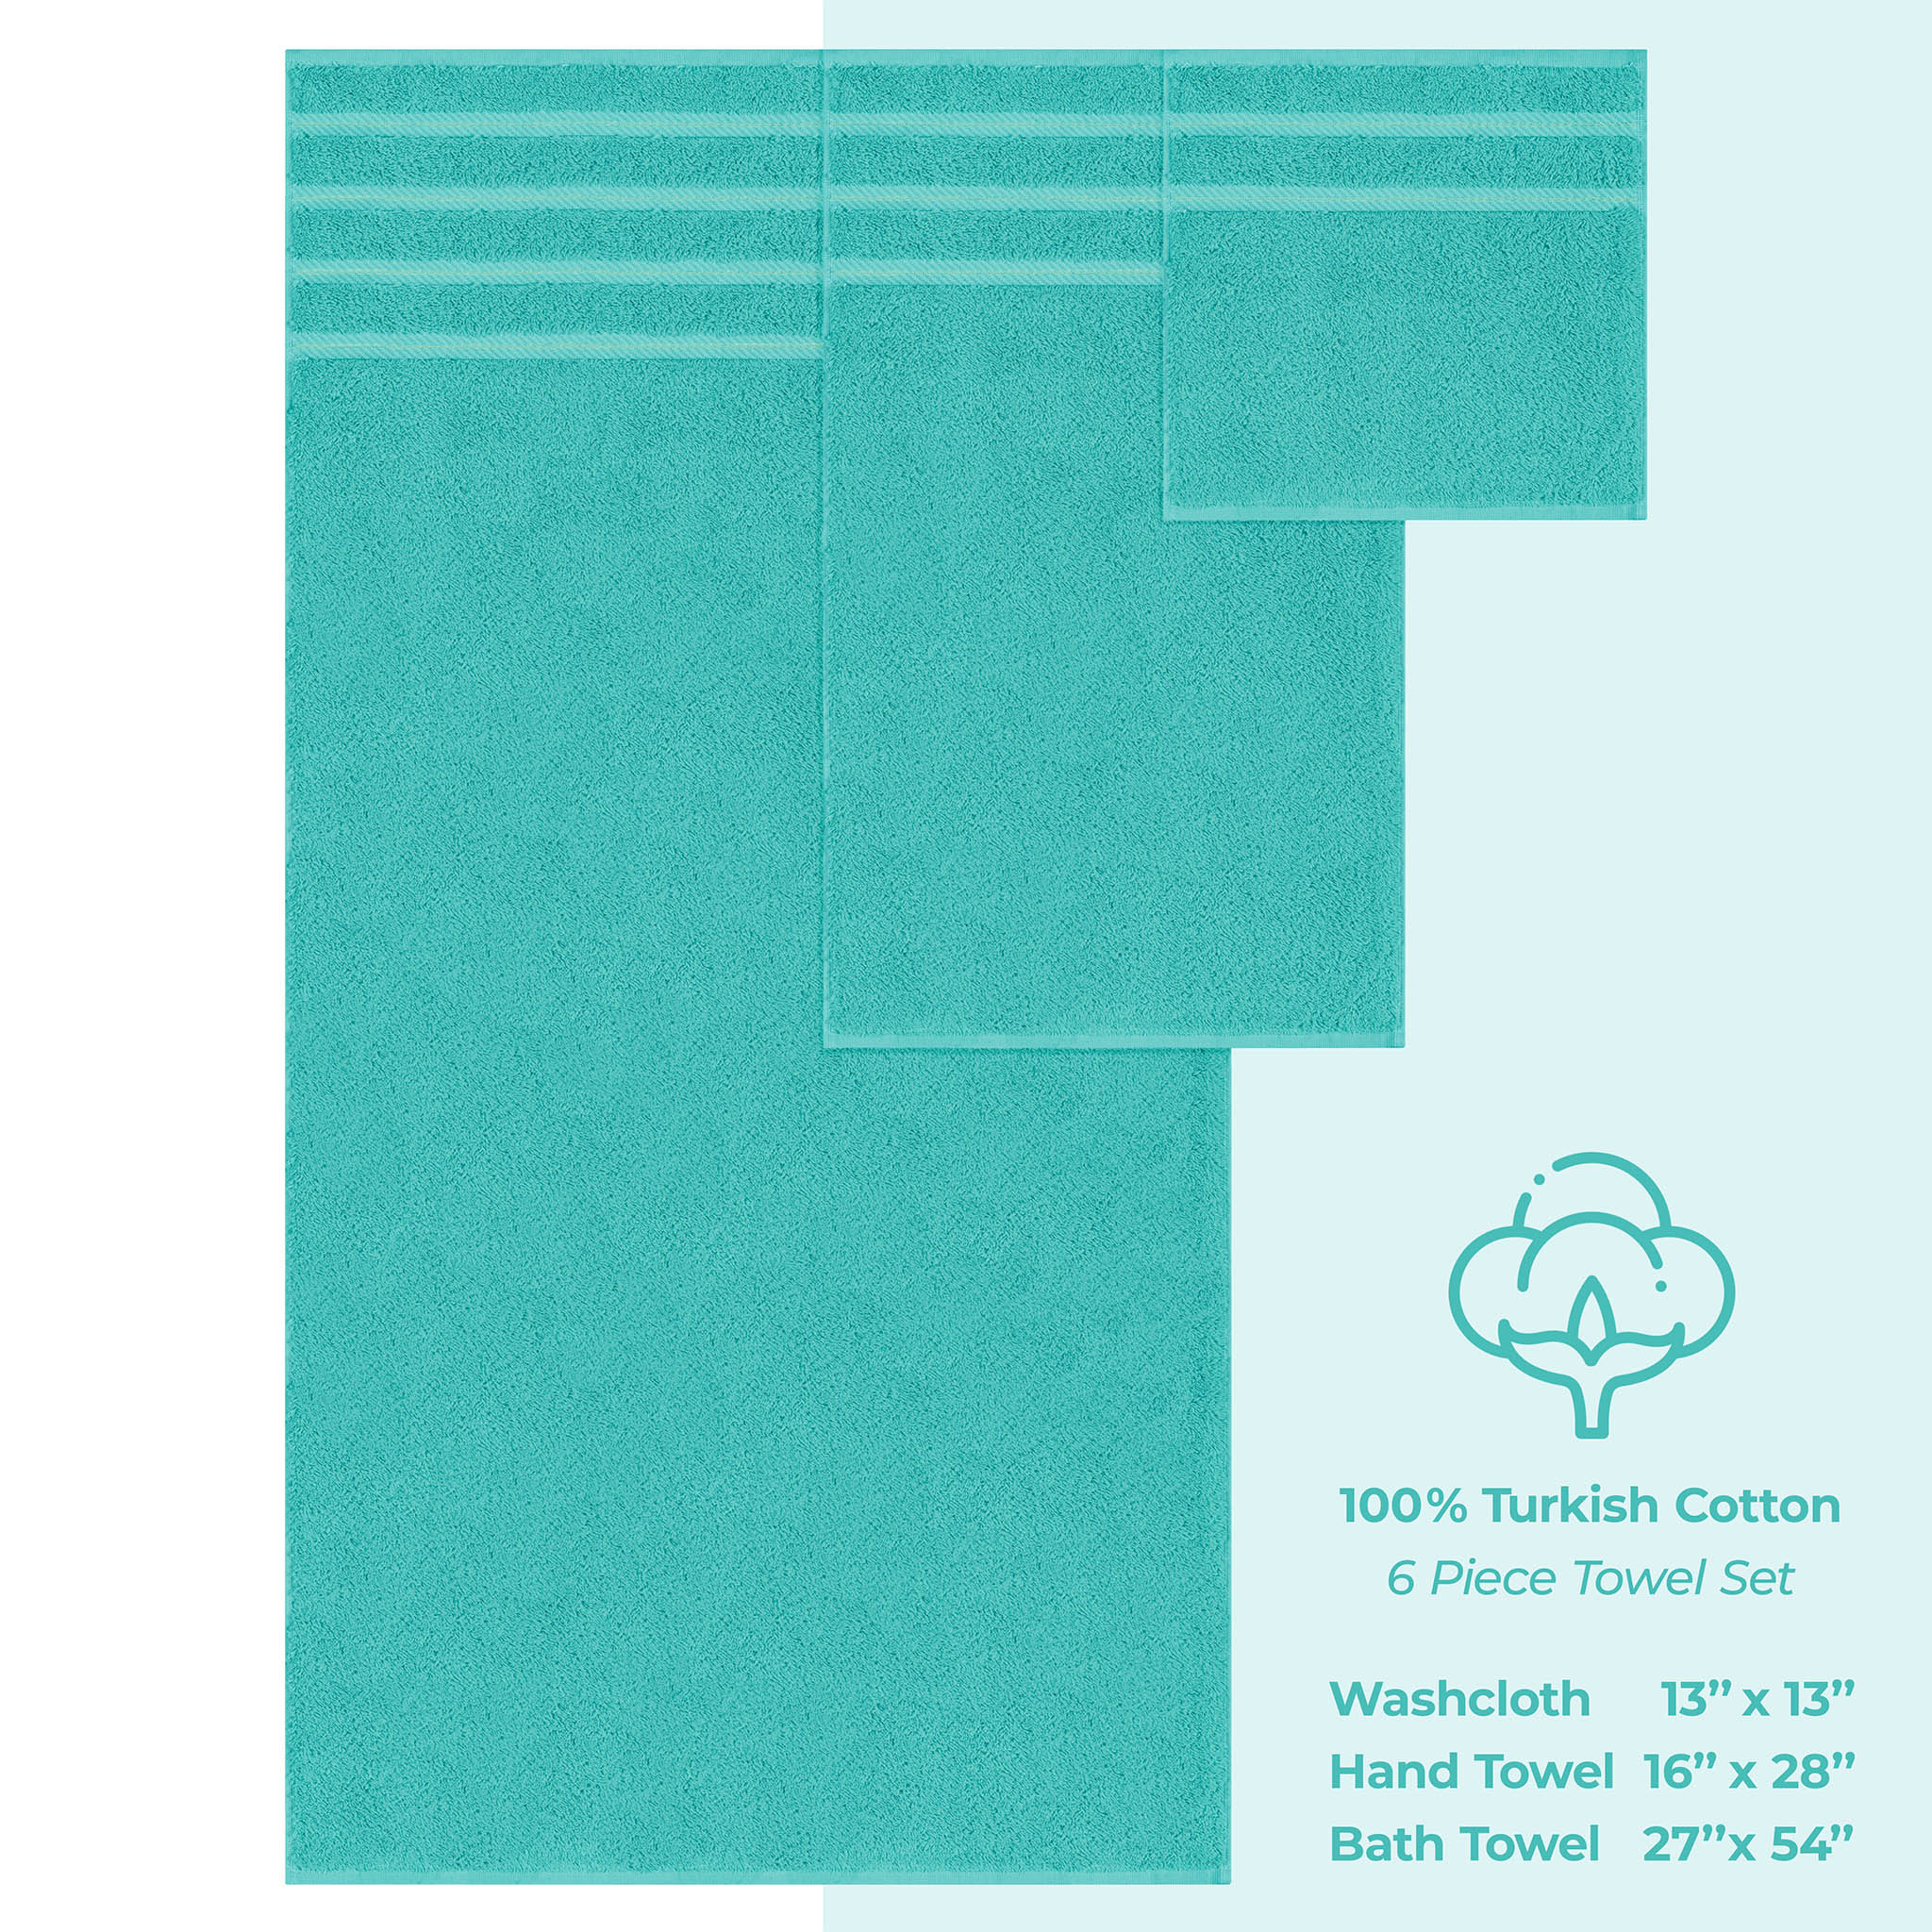 American Soft Linen 100% Turkish Cotton 6 Piece Towel Set Wholesale turquoise-blue-4